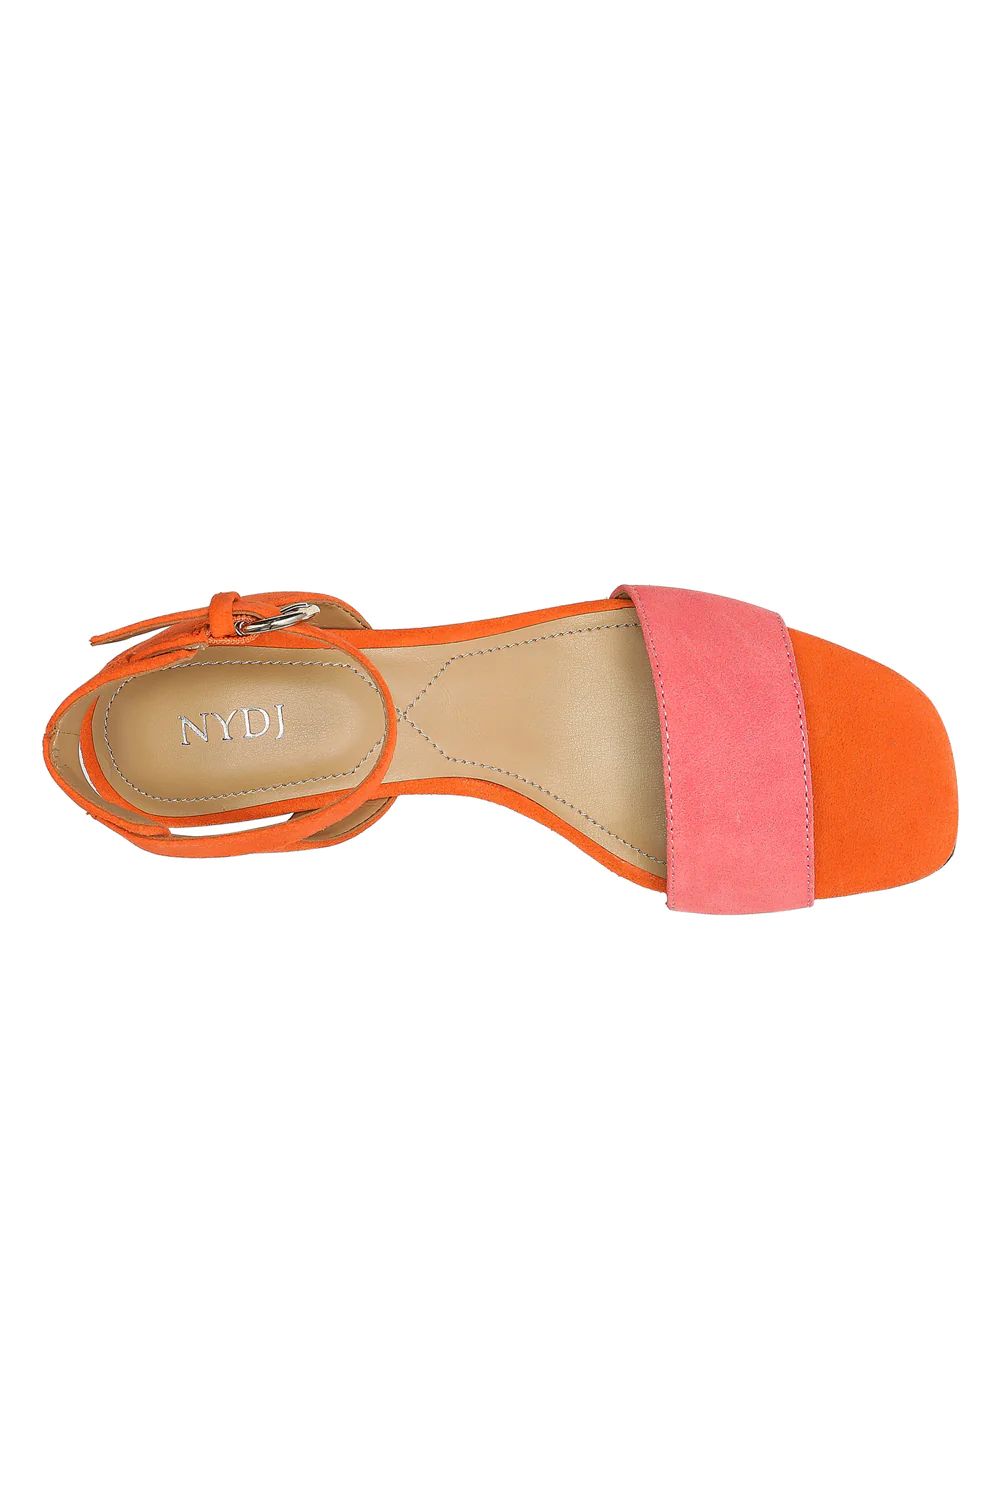 Georgia Block Heel Sandals - Watermelon | NYDJ